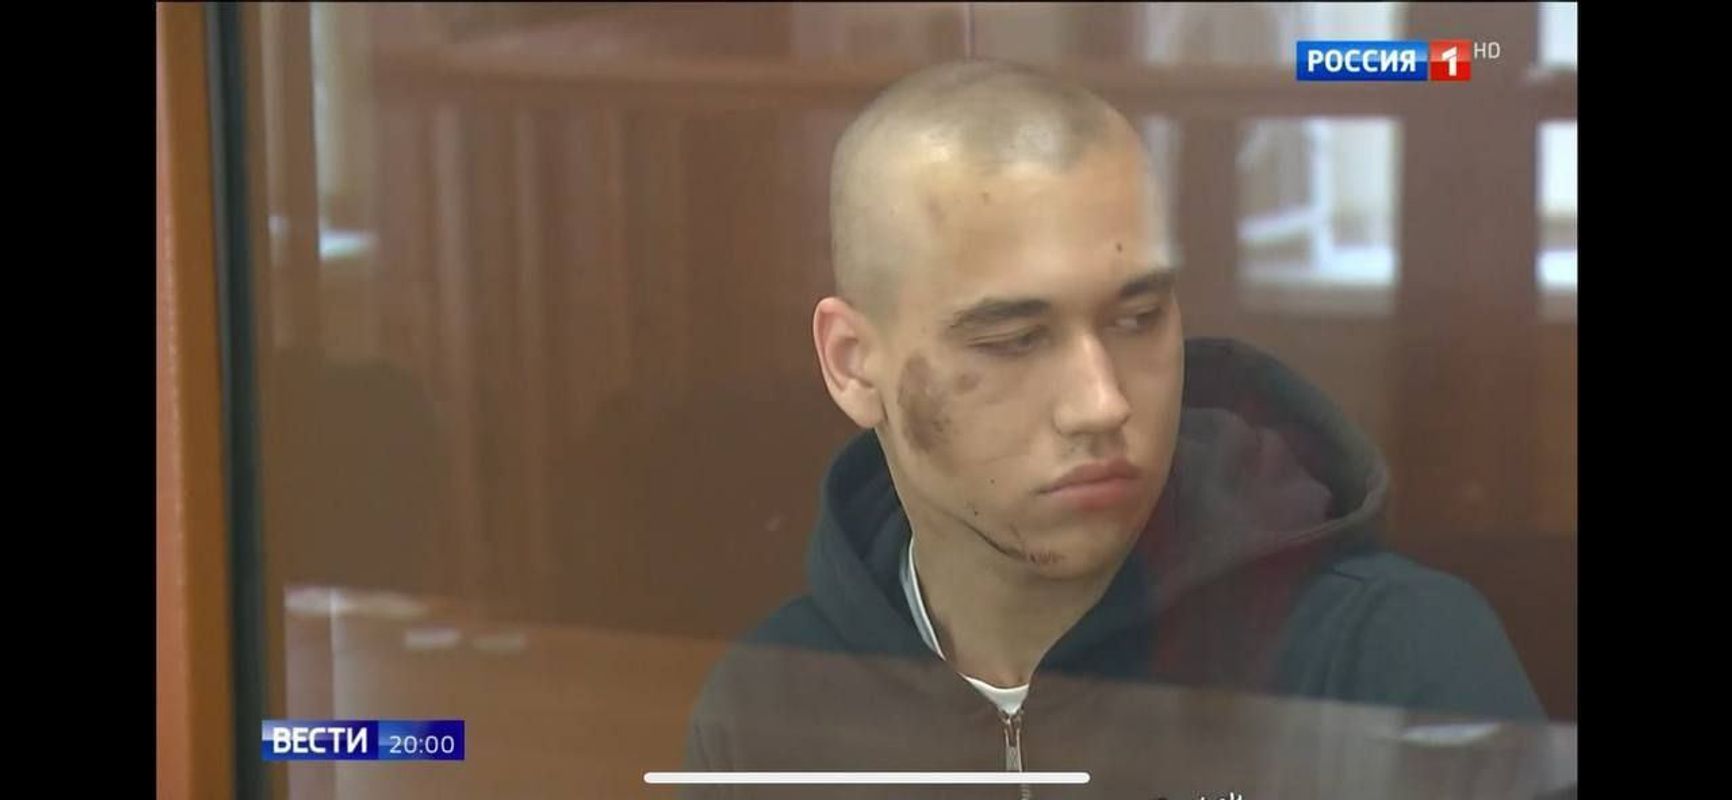 В сюжете «Вестей» показали 18-летнего Михаила Балашова, задержанного по делу о попытке покушения на Симоньян и Собчак. На его лице и шее были отчетливо видны ссадины и синяки